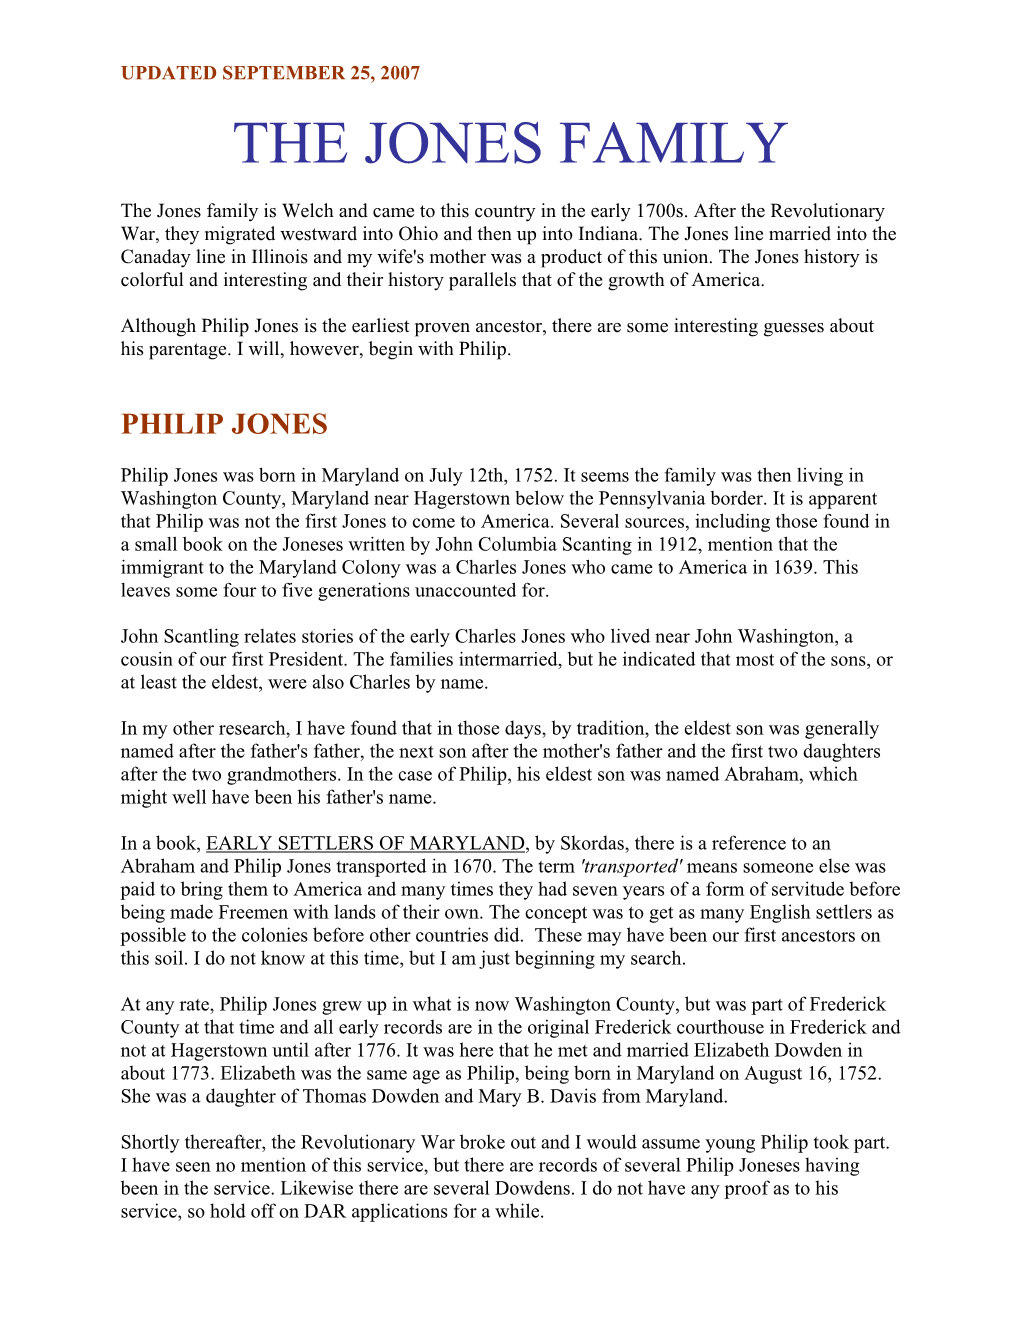 The Jones Family